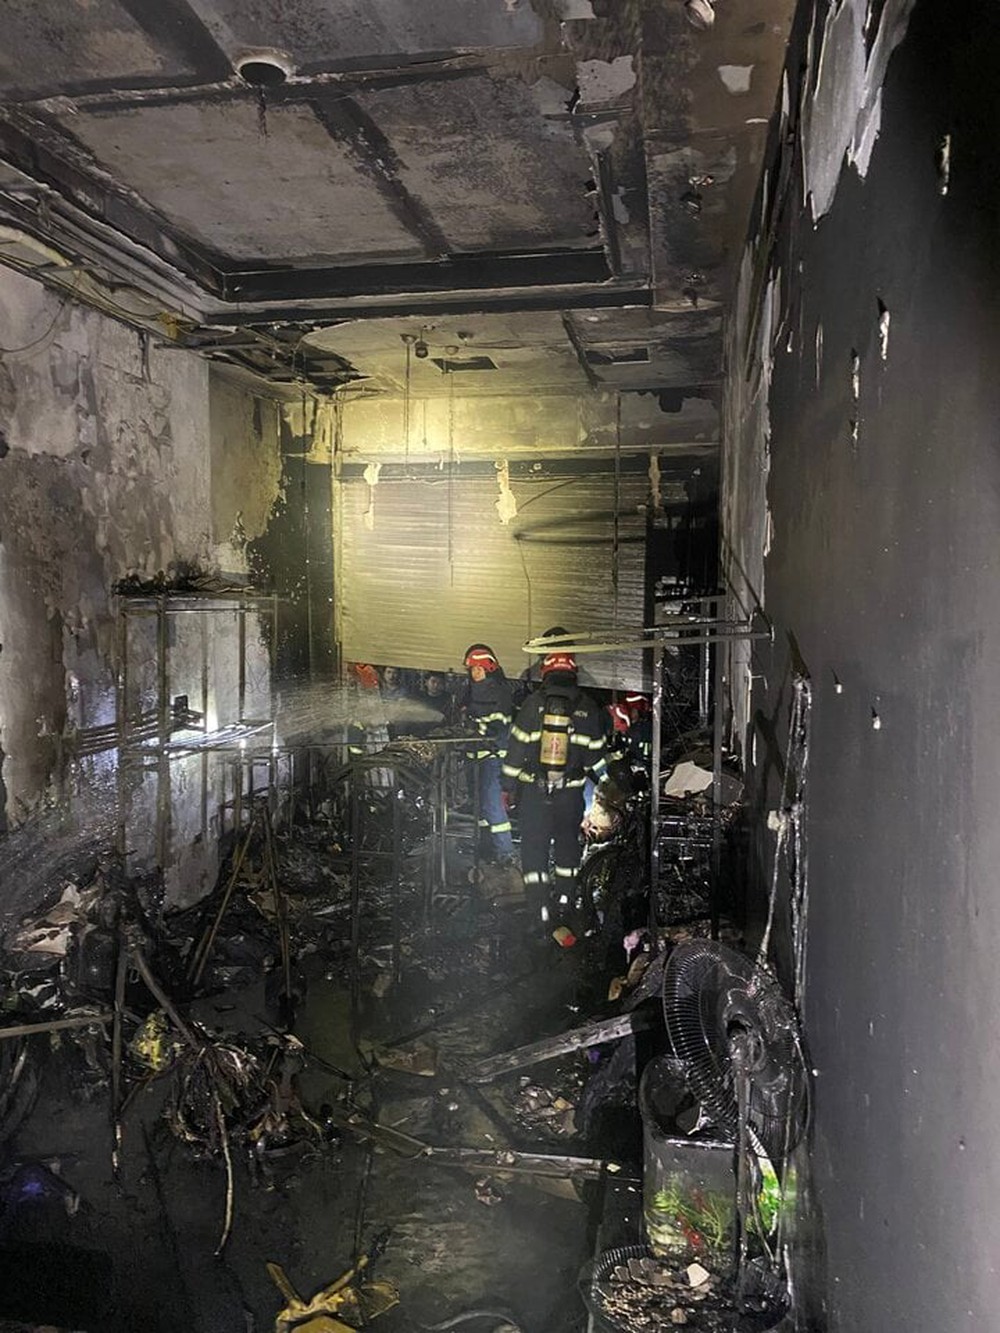 Hà Nội: Cháy nhà 4 tầng trong ngõ, 5 người thoát nạn - Ảnh 1.